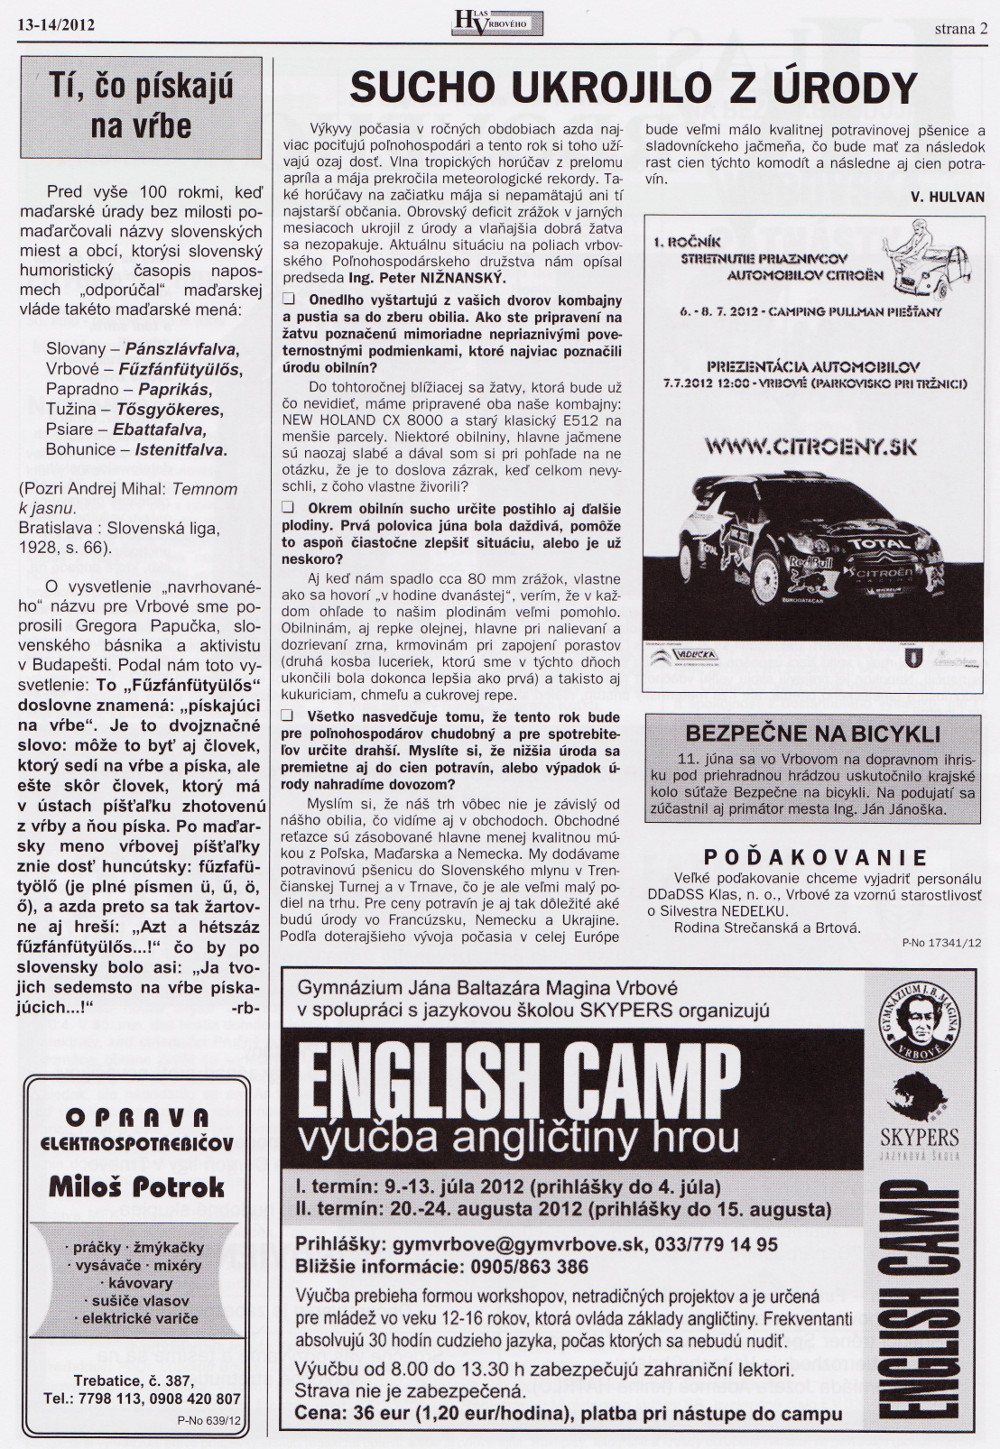 Hlas Vrbového 13-14/2012, strana 2